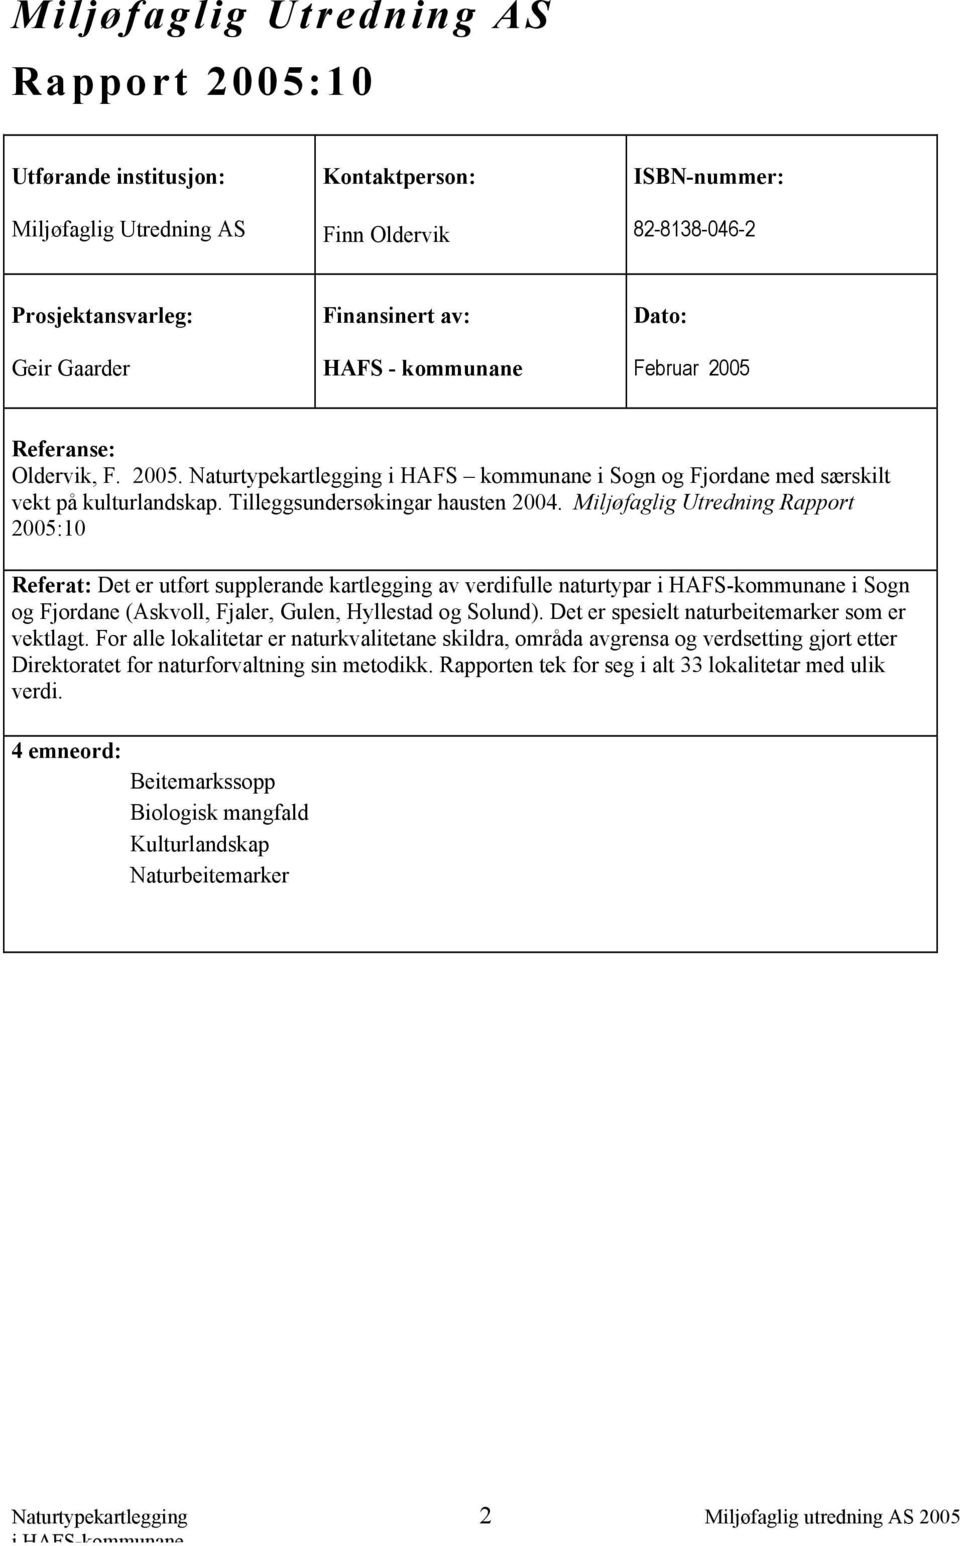 Miljøfaglig Utredning Rapport 2005:10 Referat: Det er utført supplerande kartlegging av verdifulle naturtypar i Sogn og Fjordane (Askvoll, Fjaler, Gulen, Hyllestad og Solund).